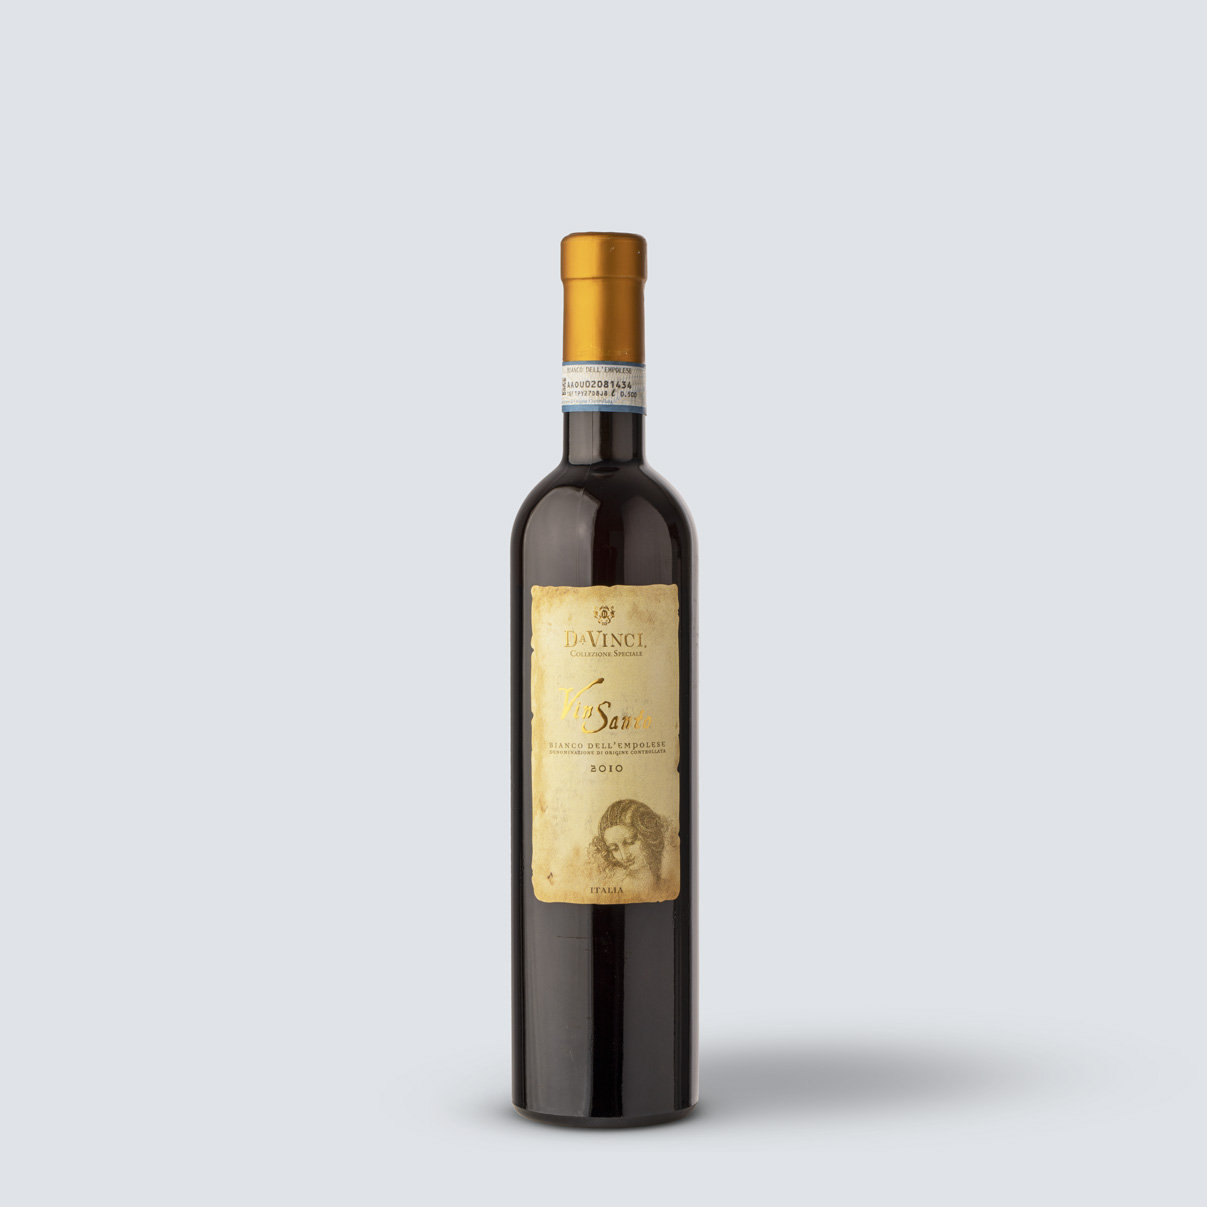 Vin Santo 2010 Collezione Speciale - Da Vinci (0,5 lt)